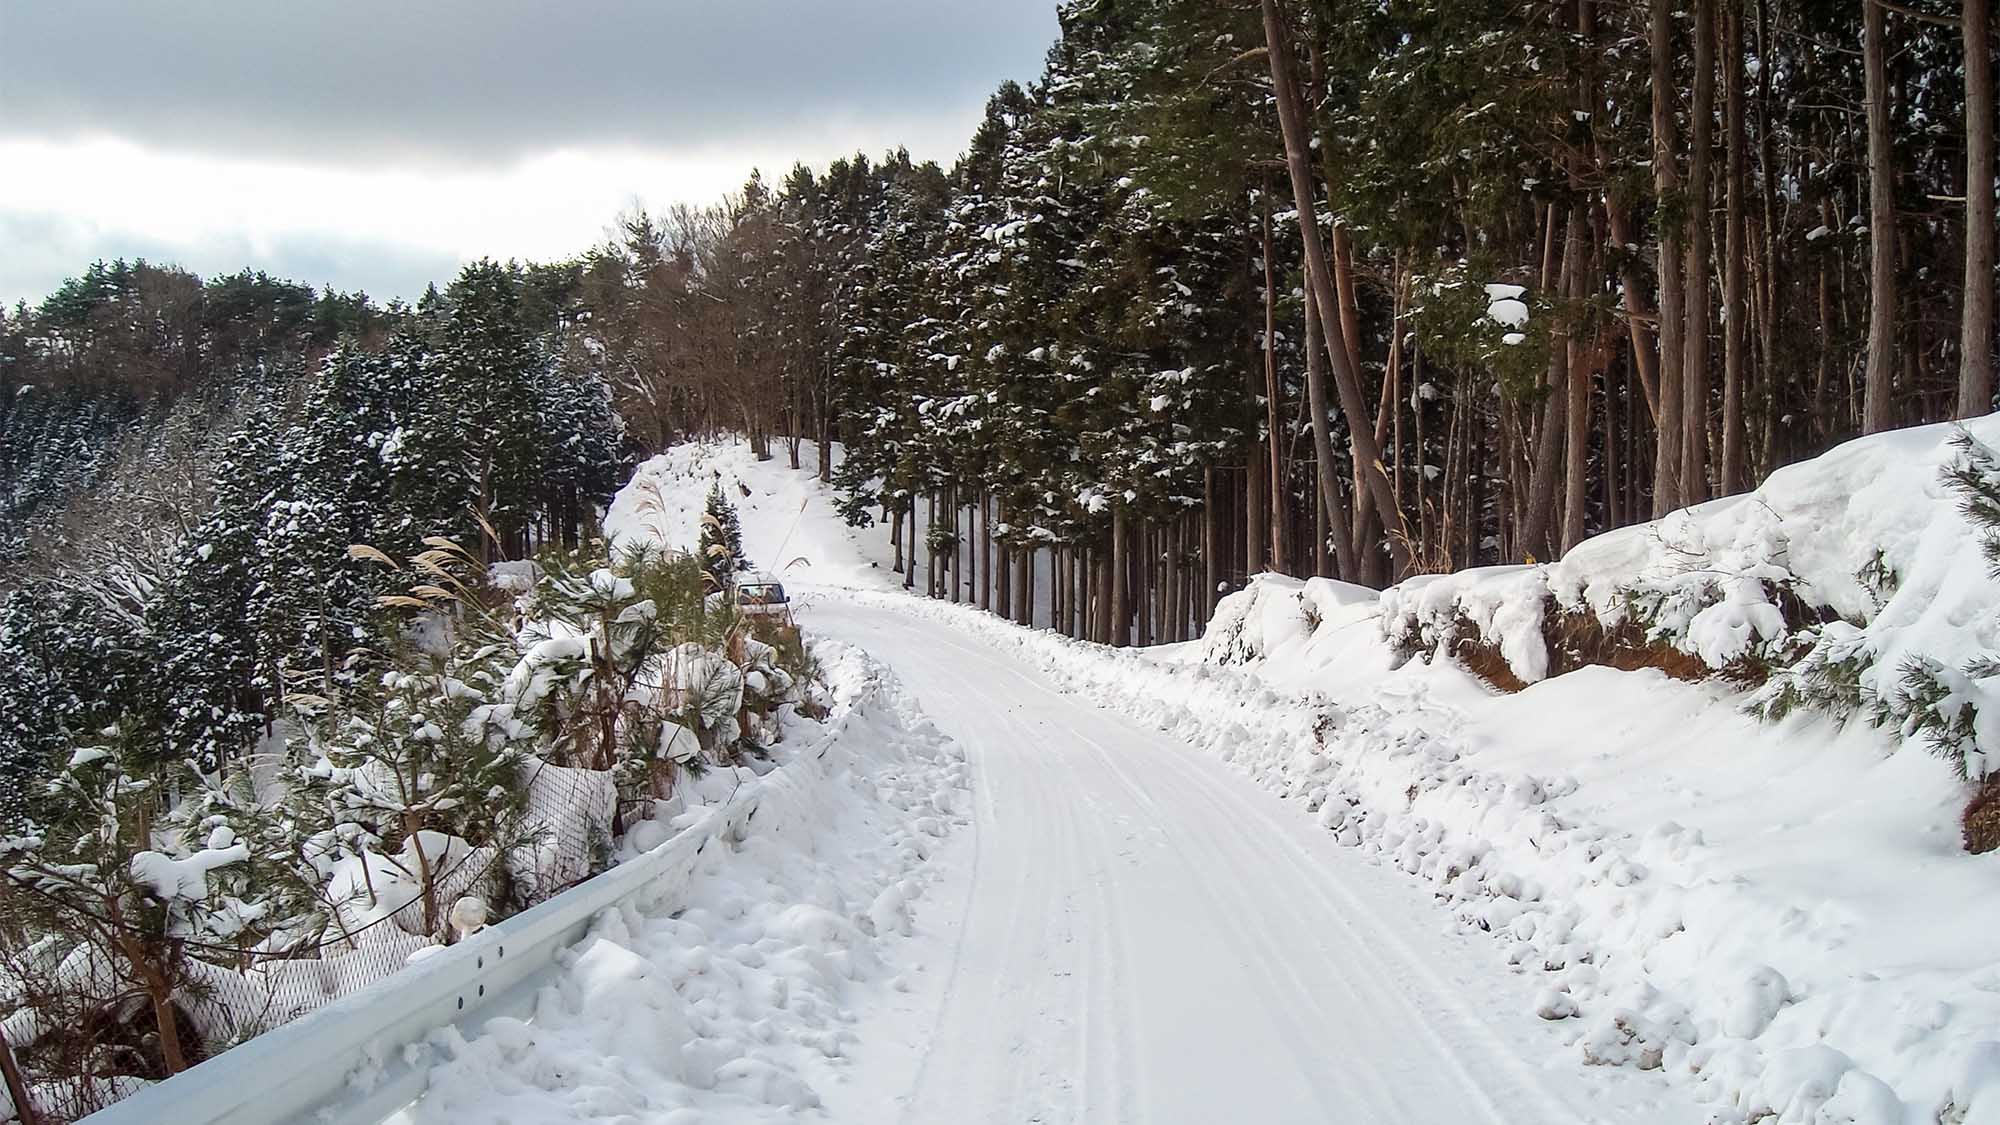 ・【風景】雪景色に染まるホテル周辺の道と木々